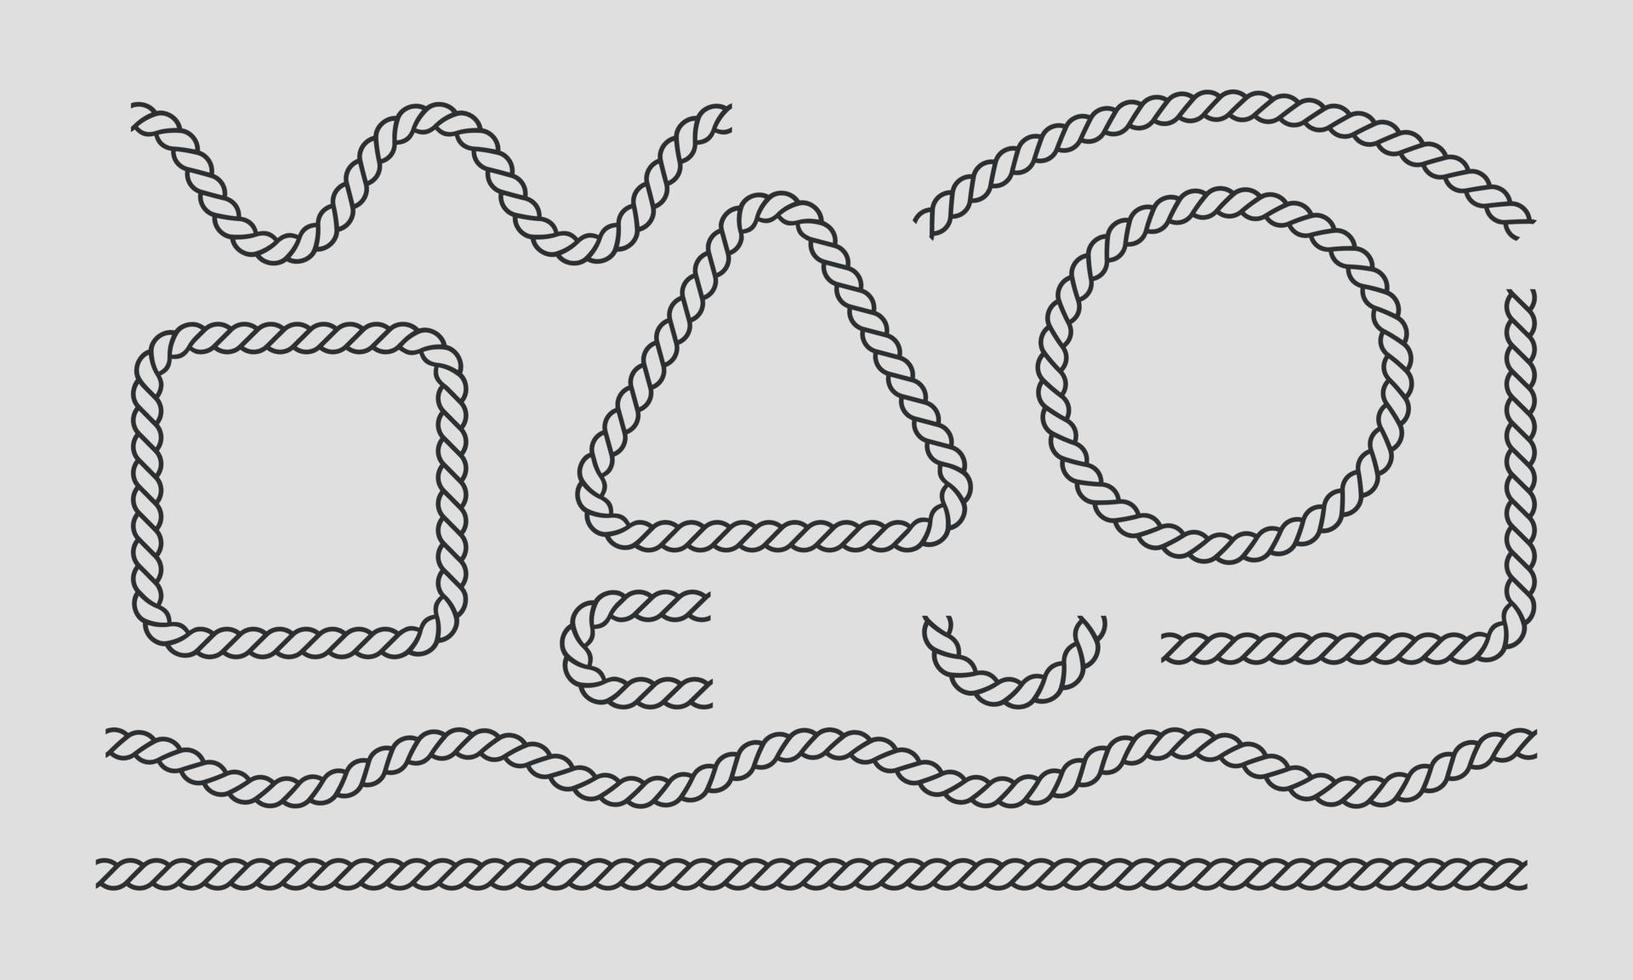 moldura de corda, conjunto de elementos decorativos de corda. conjunto de ícones de linha fina preta. tipos diferentes. ilustração vetorial vetor